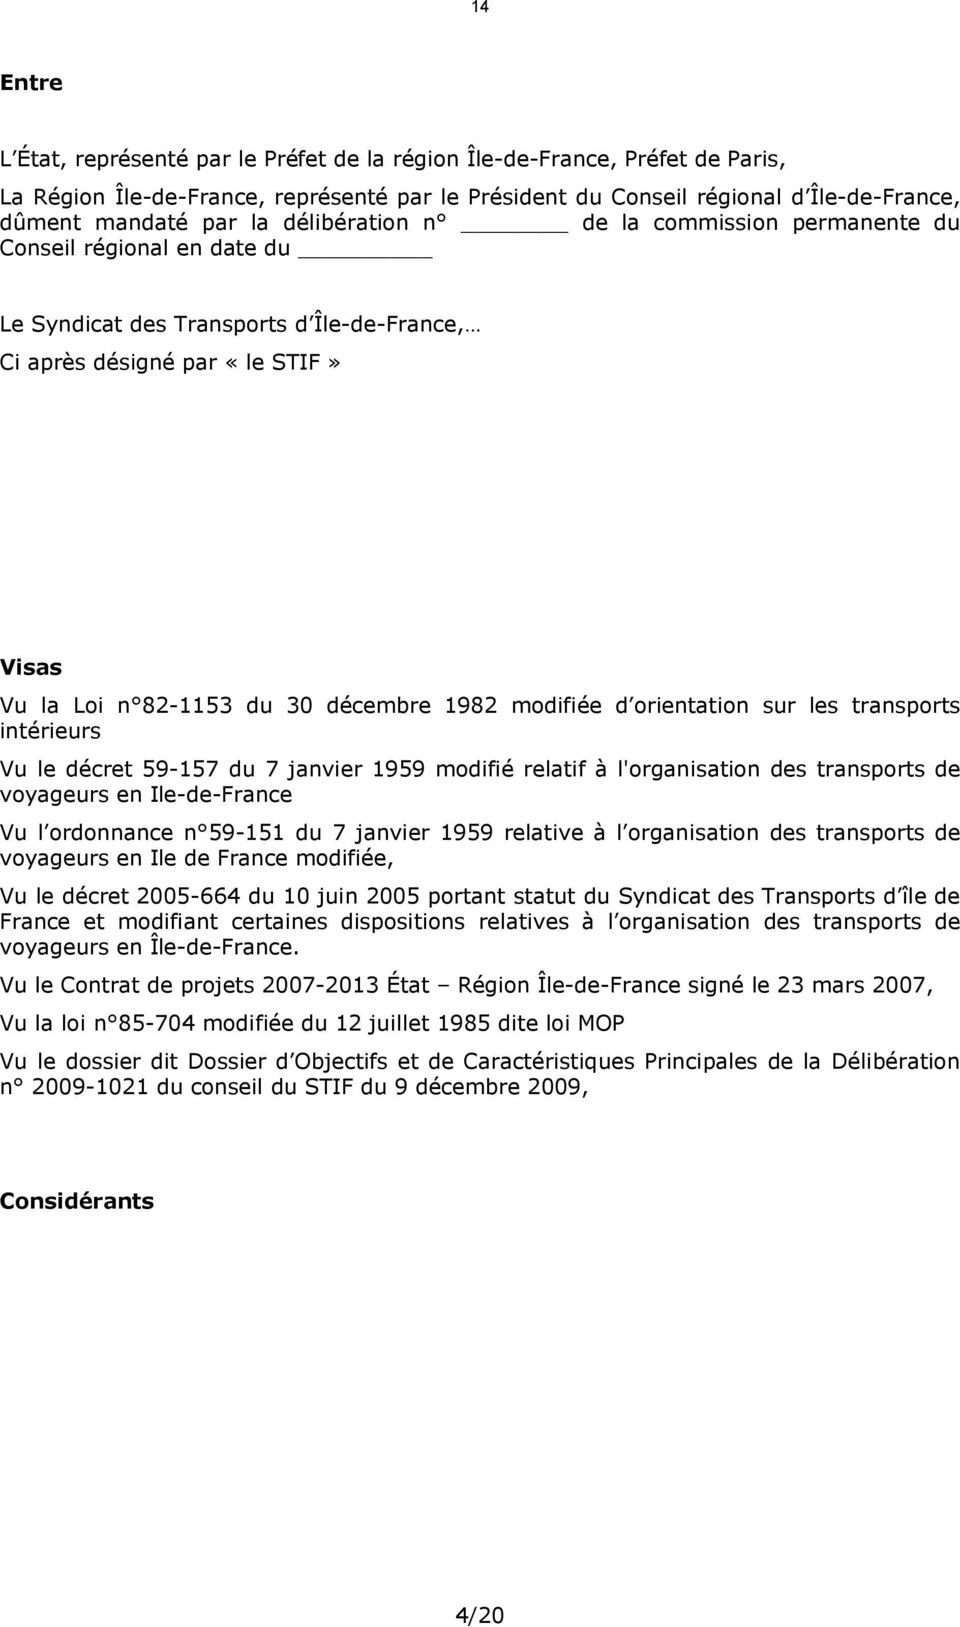 modifiée d orientation sur les transports intérieurs Vu le décret 59-157 du 7 janvier 1959 modifié relatif à l'organisation des transports de voyageurs en Ile-de-France Vu l ordonnance n 59-151 du 7